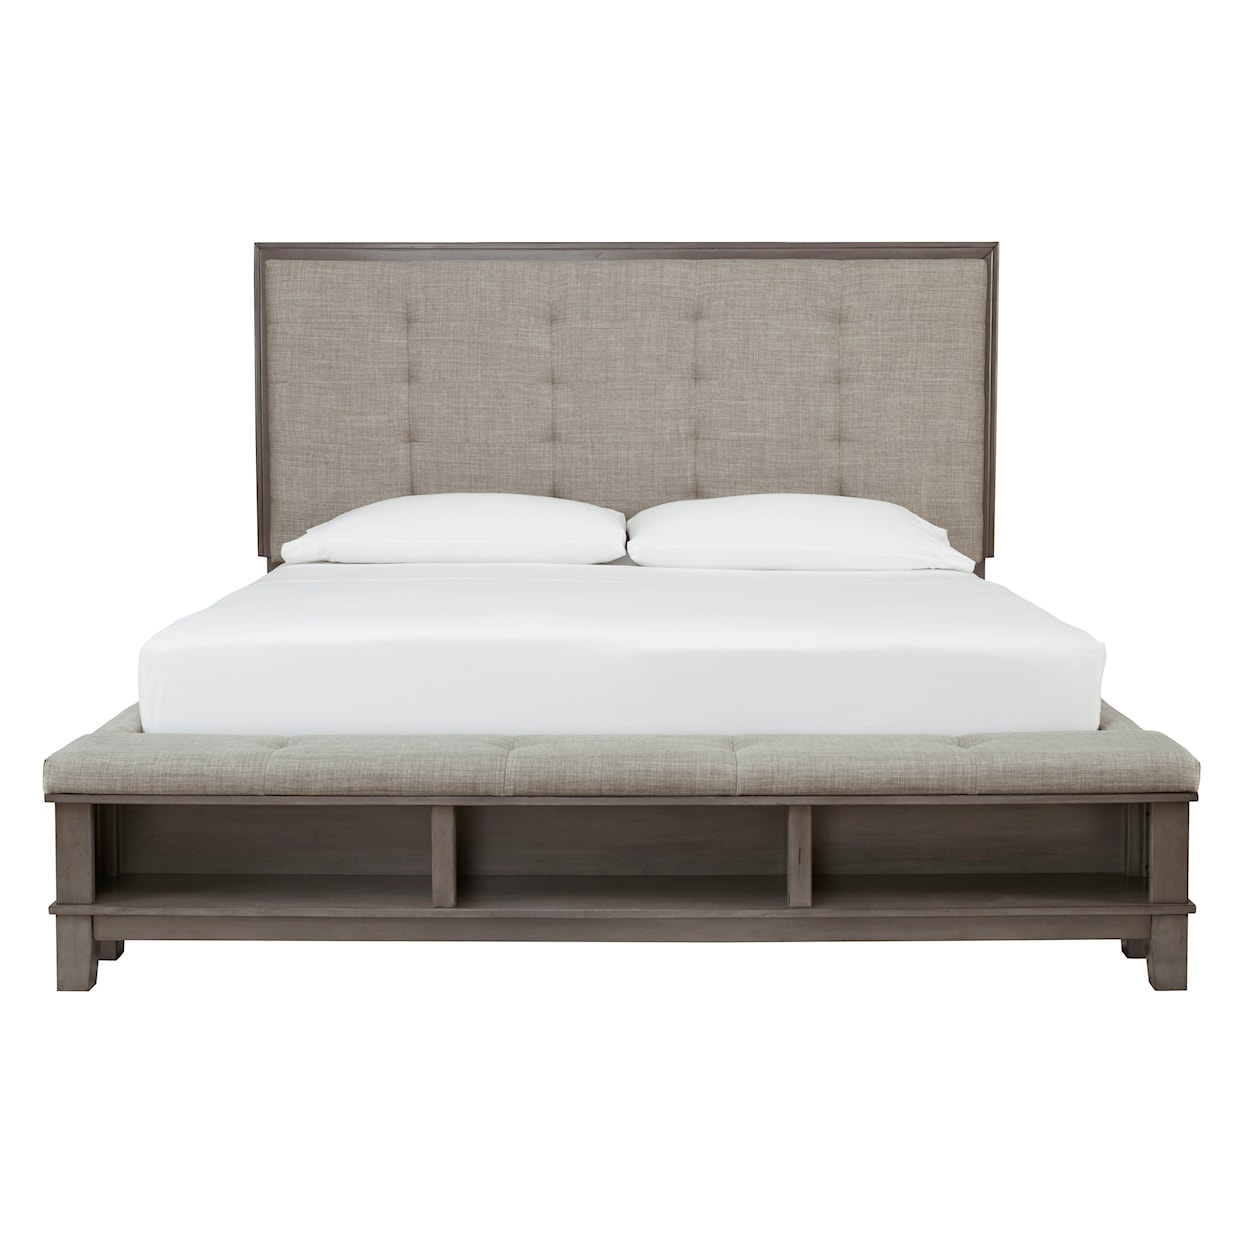 Ashley Furniture Benchcraft Hallanden Queen Panel Bed with Storage